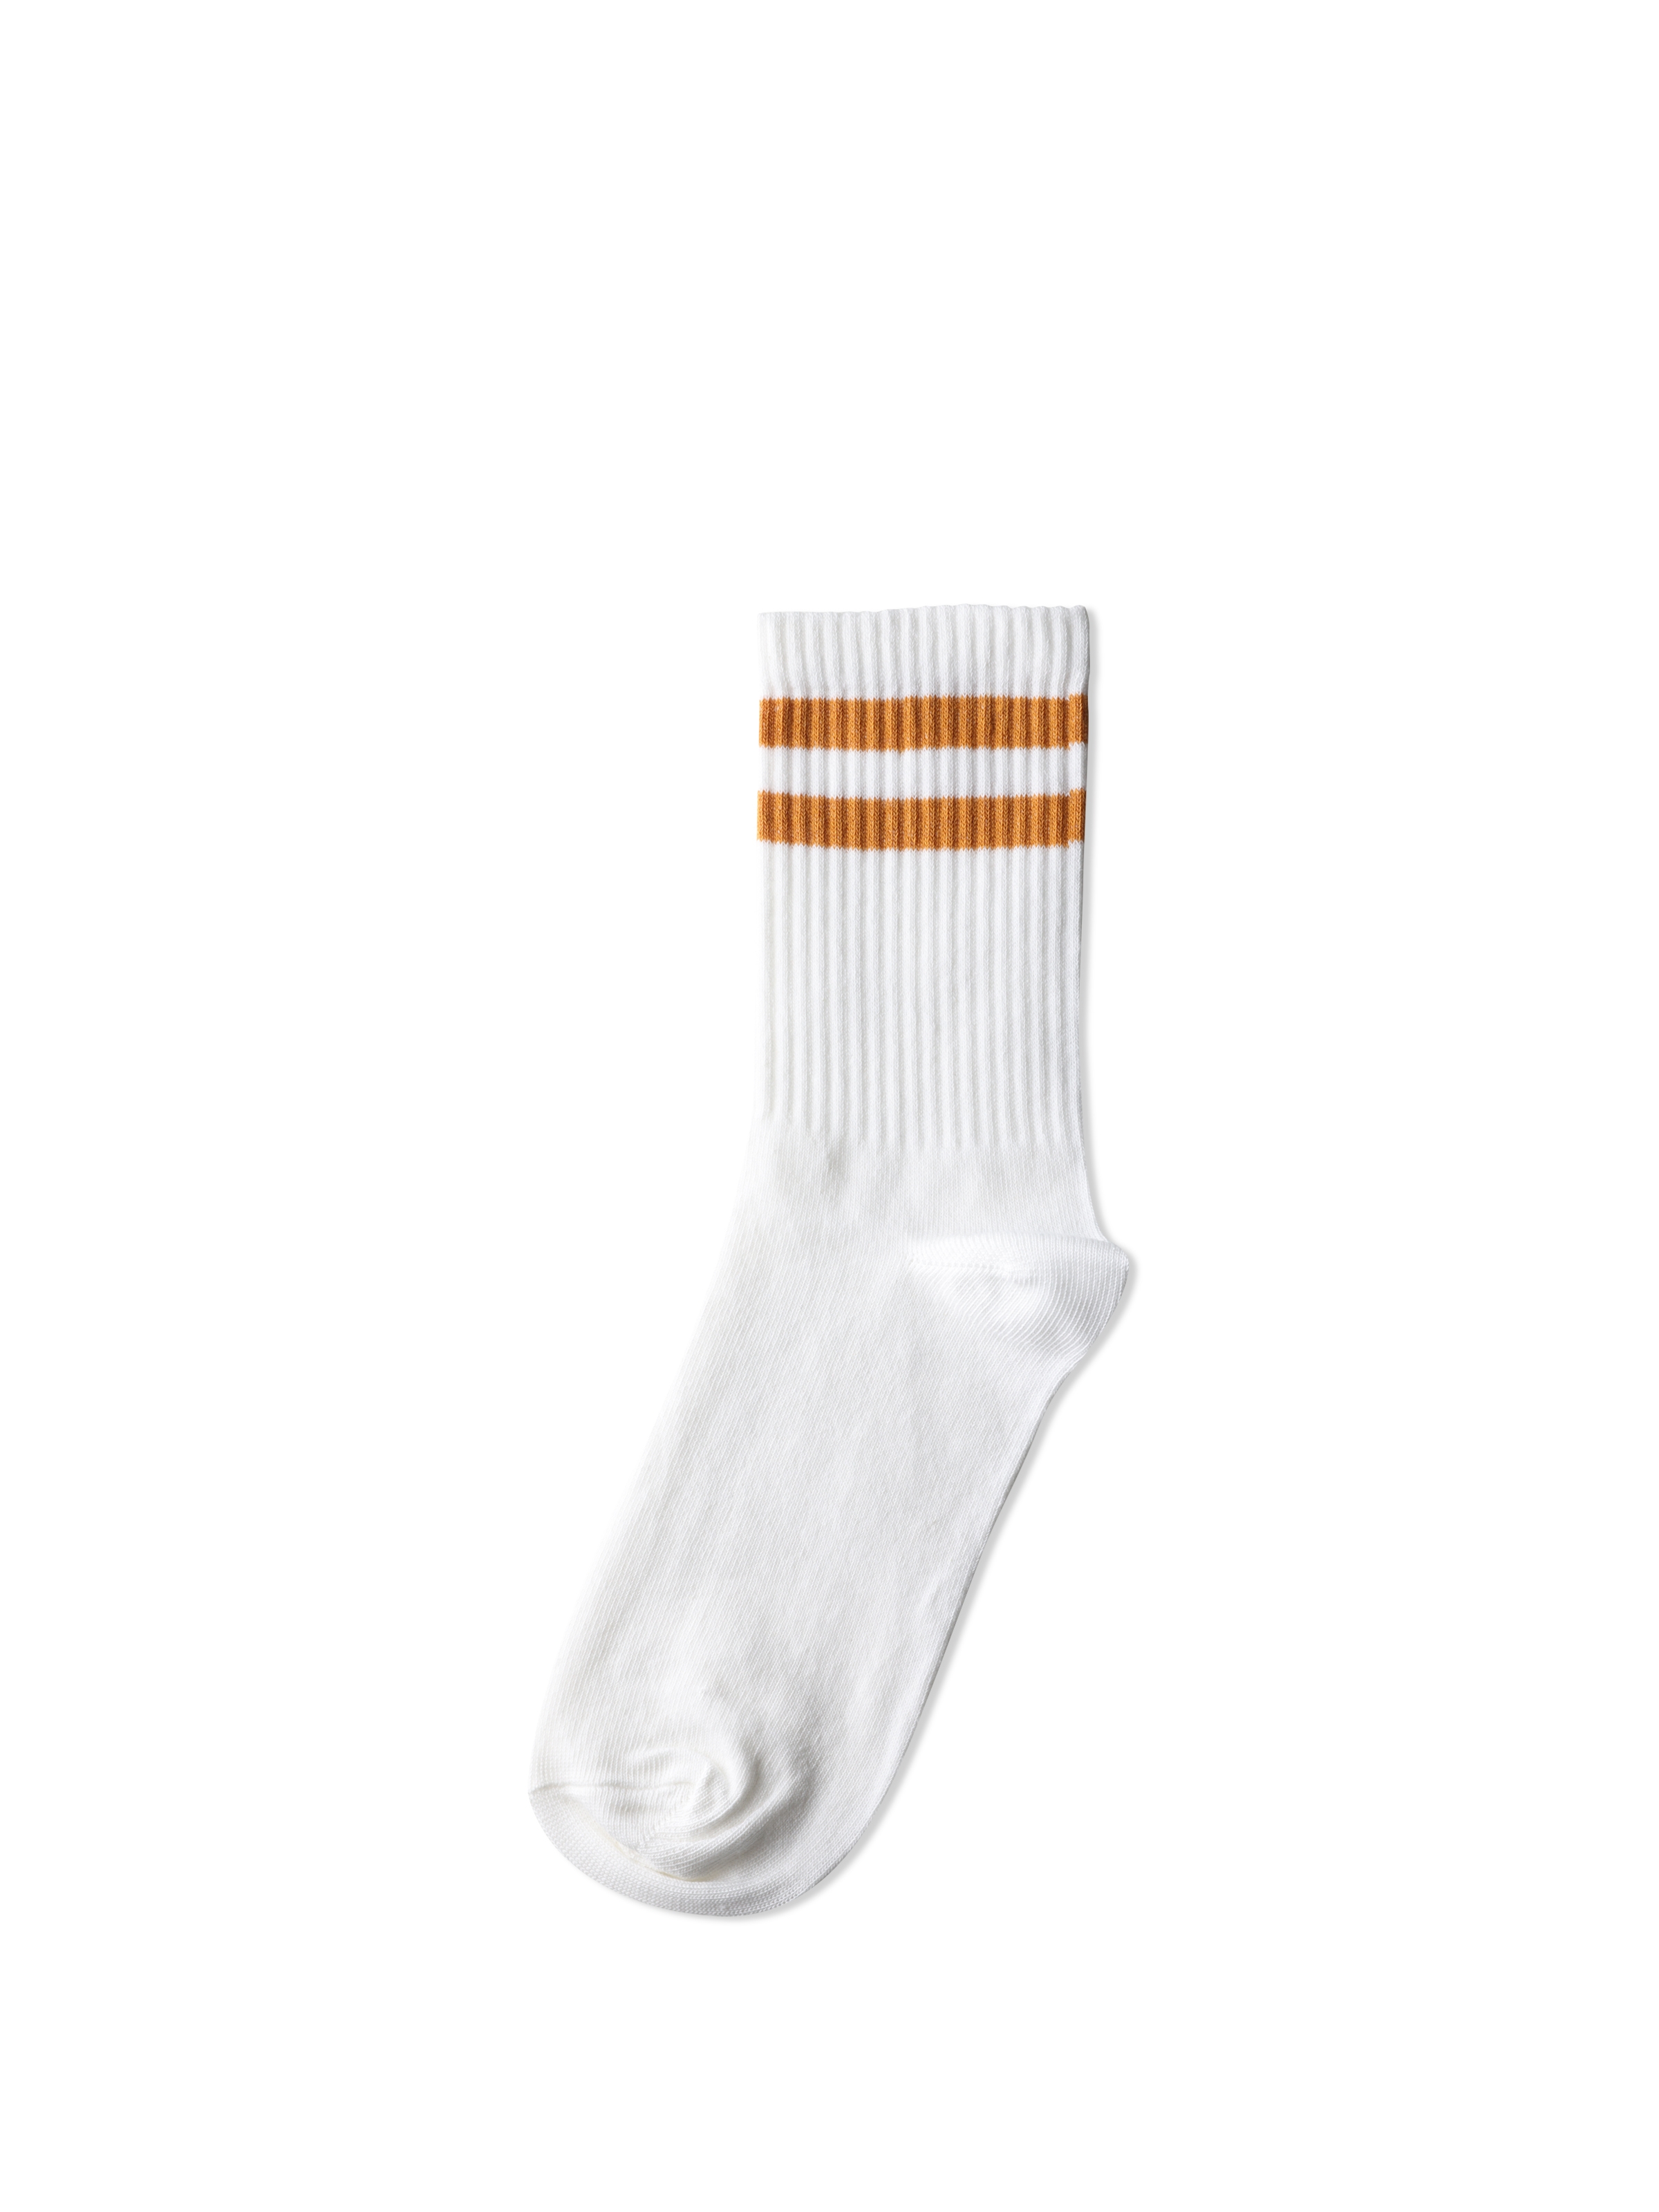 Показати інформацію про  Шкарпетки Жіночі Жовті Cl1061162